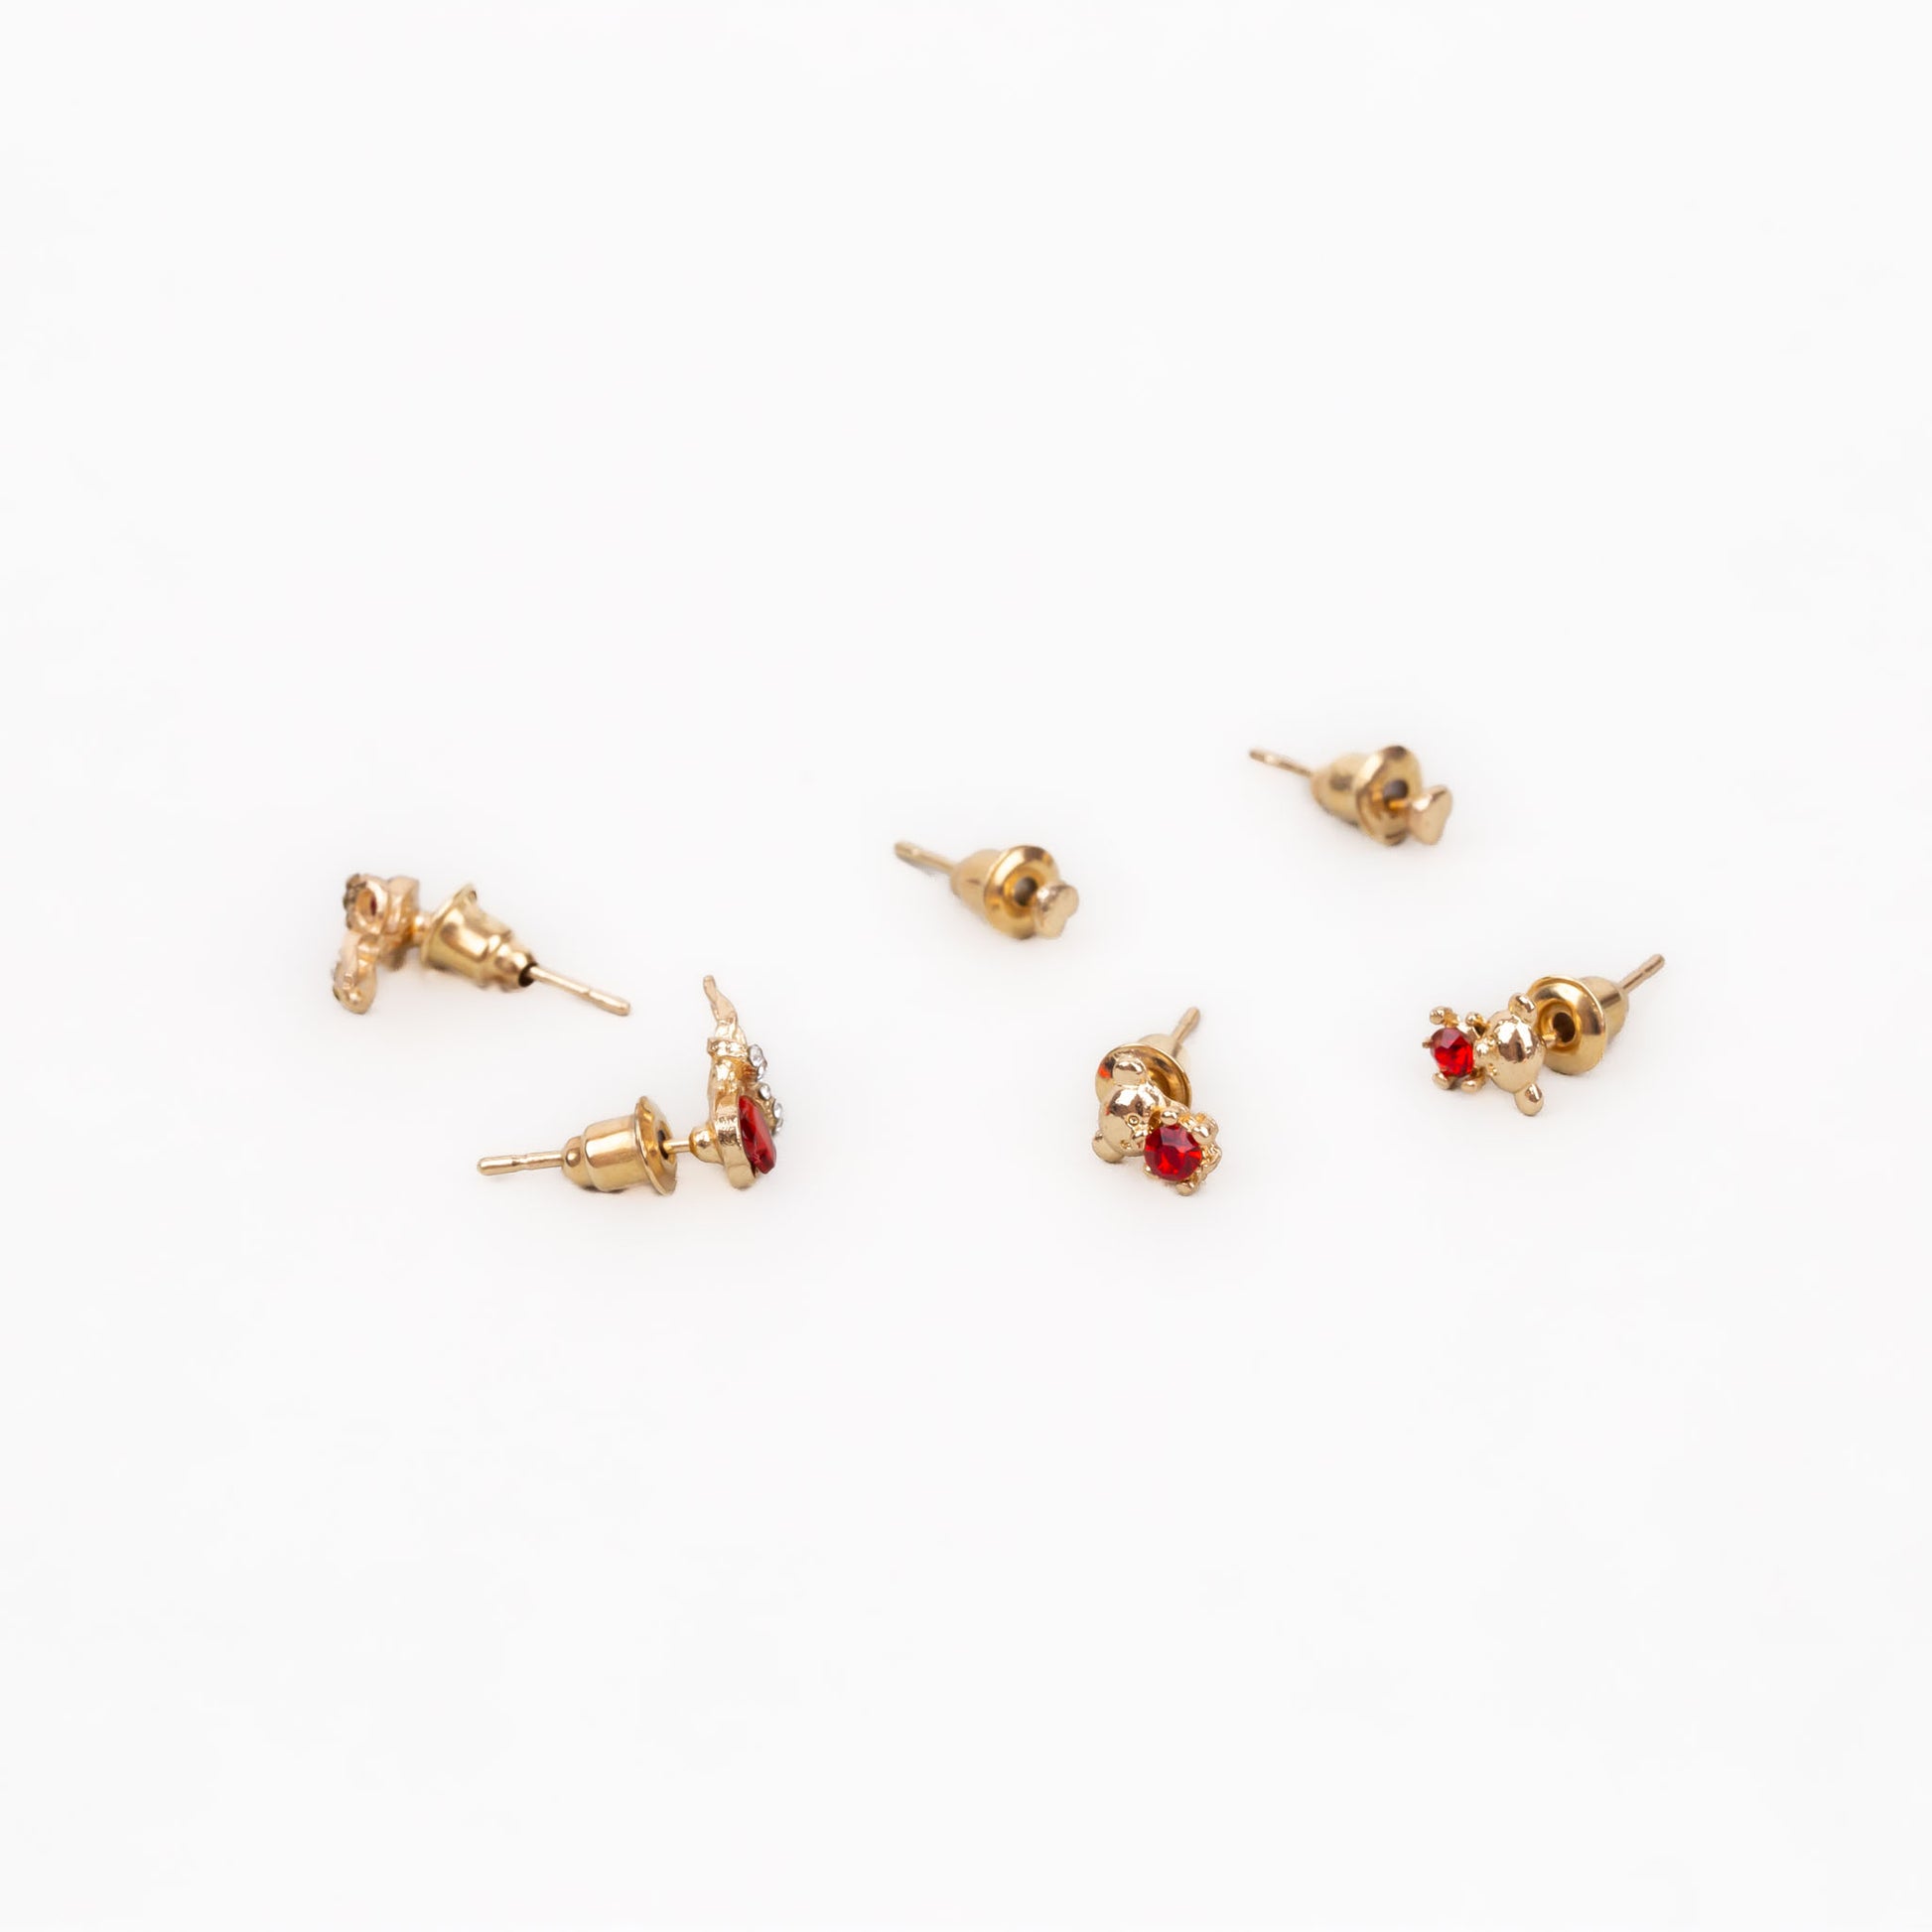 Cercei mici aurii discreți cu inimă delicată, ursuleț și pietre, set 3 perechi - Roșu